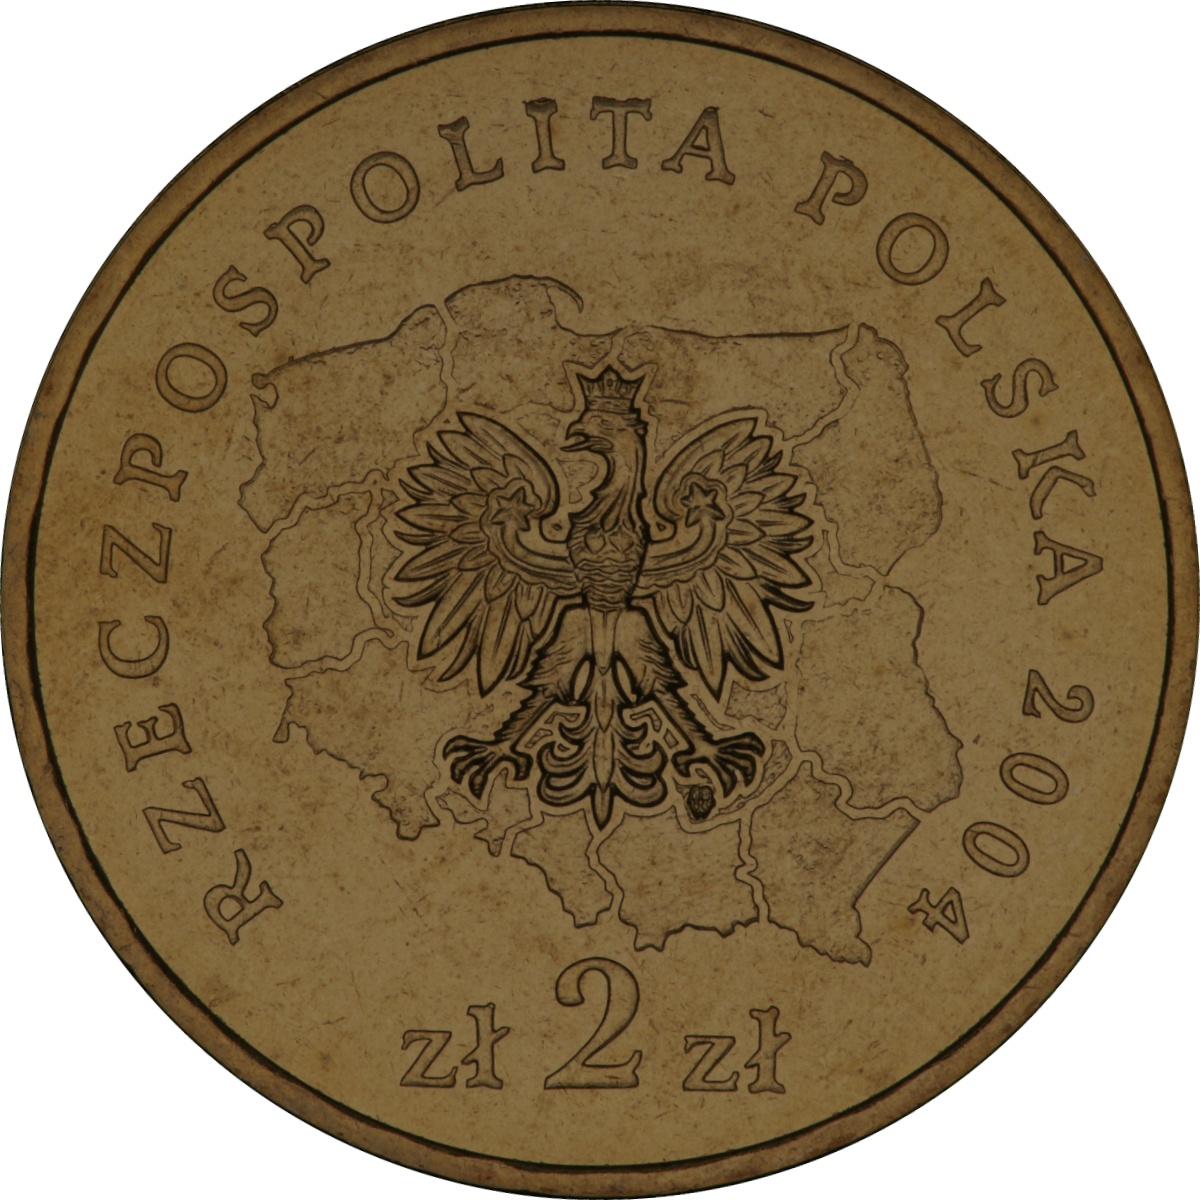 2zl-okolicznosciowe-wojewodztwo-pomorskie-awers-monety